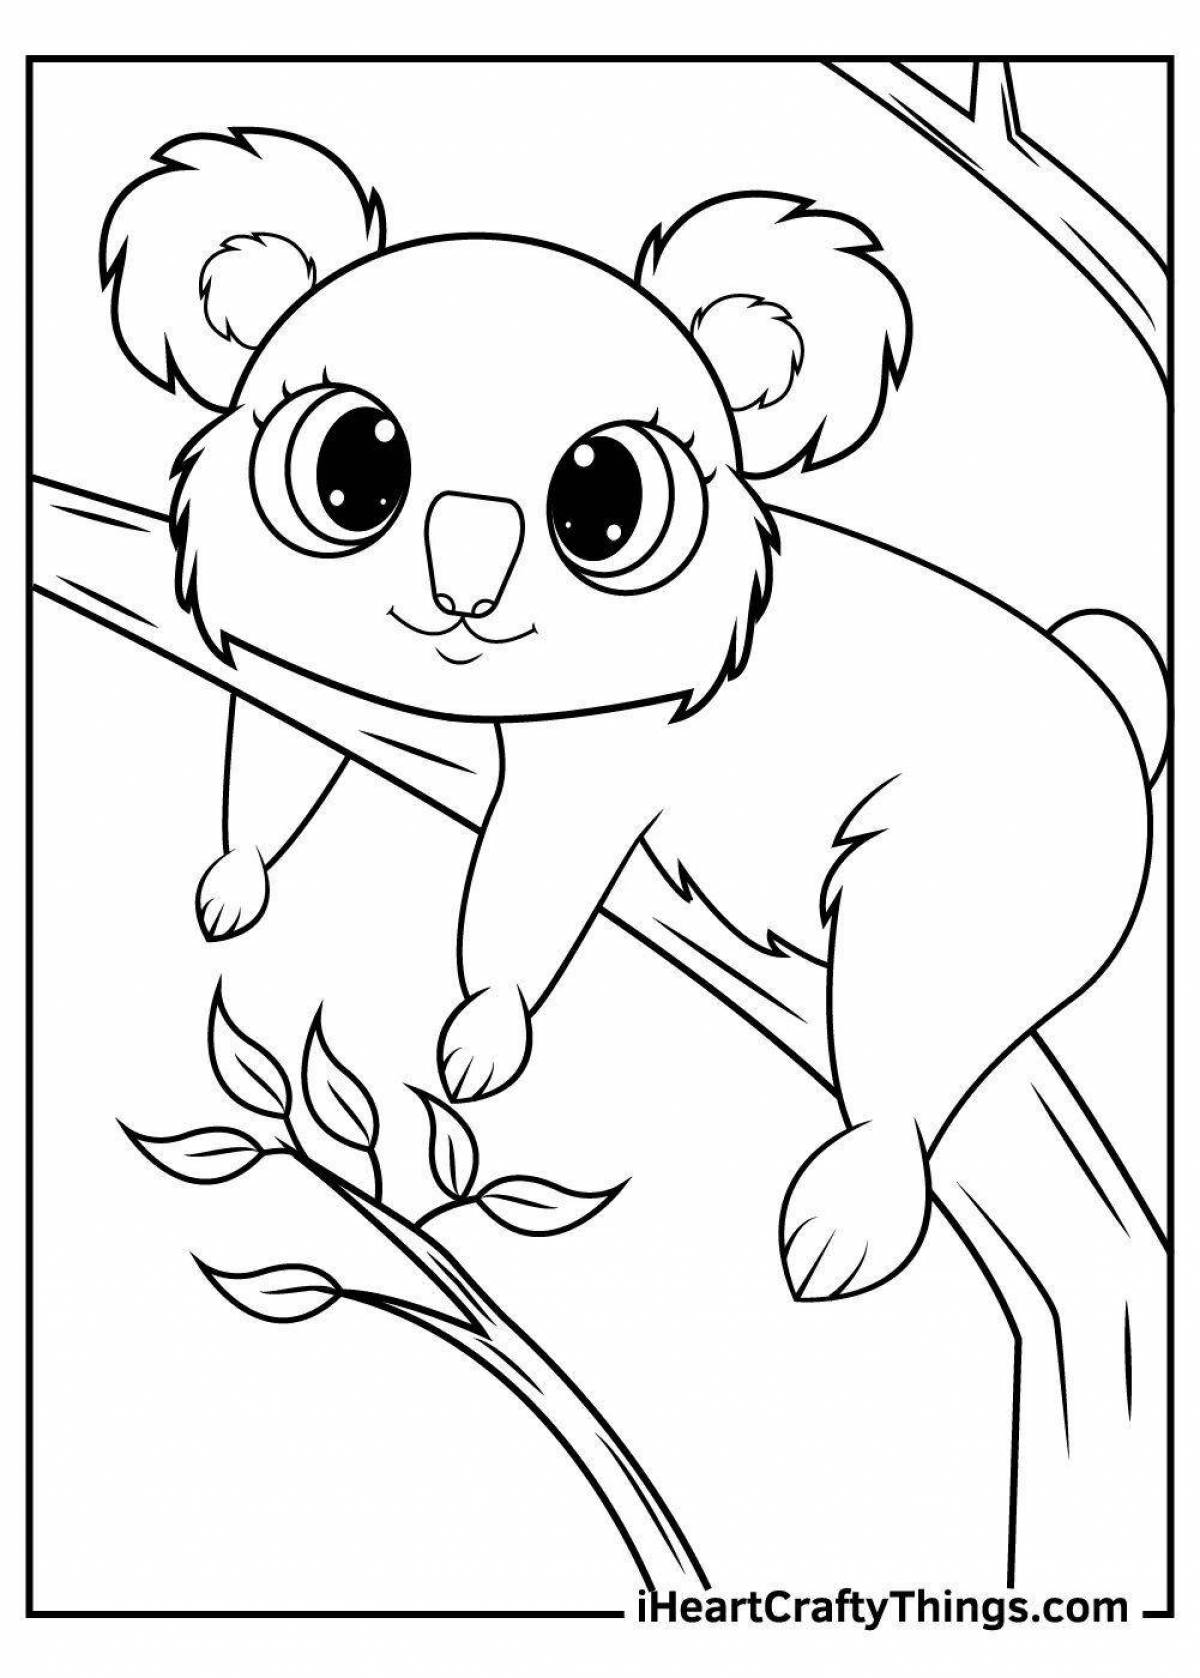 Joyful kuala coloring